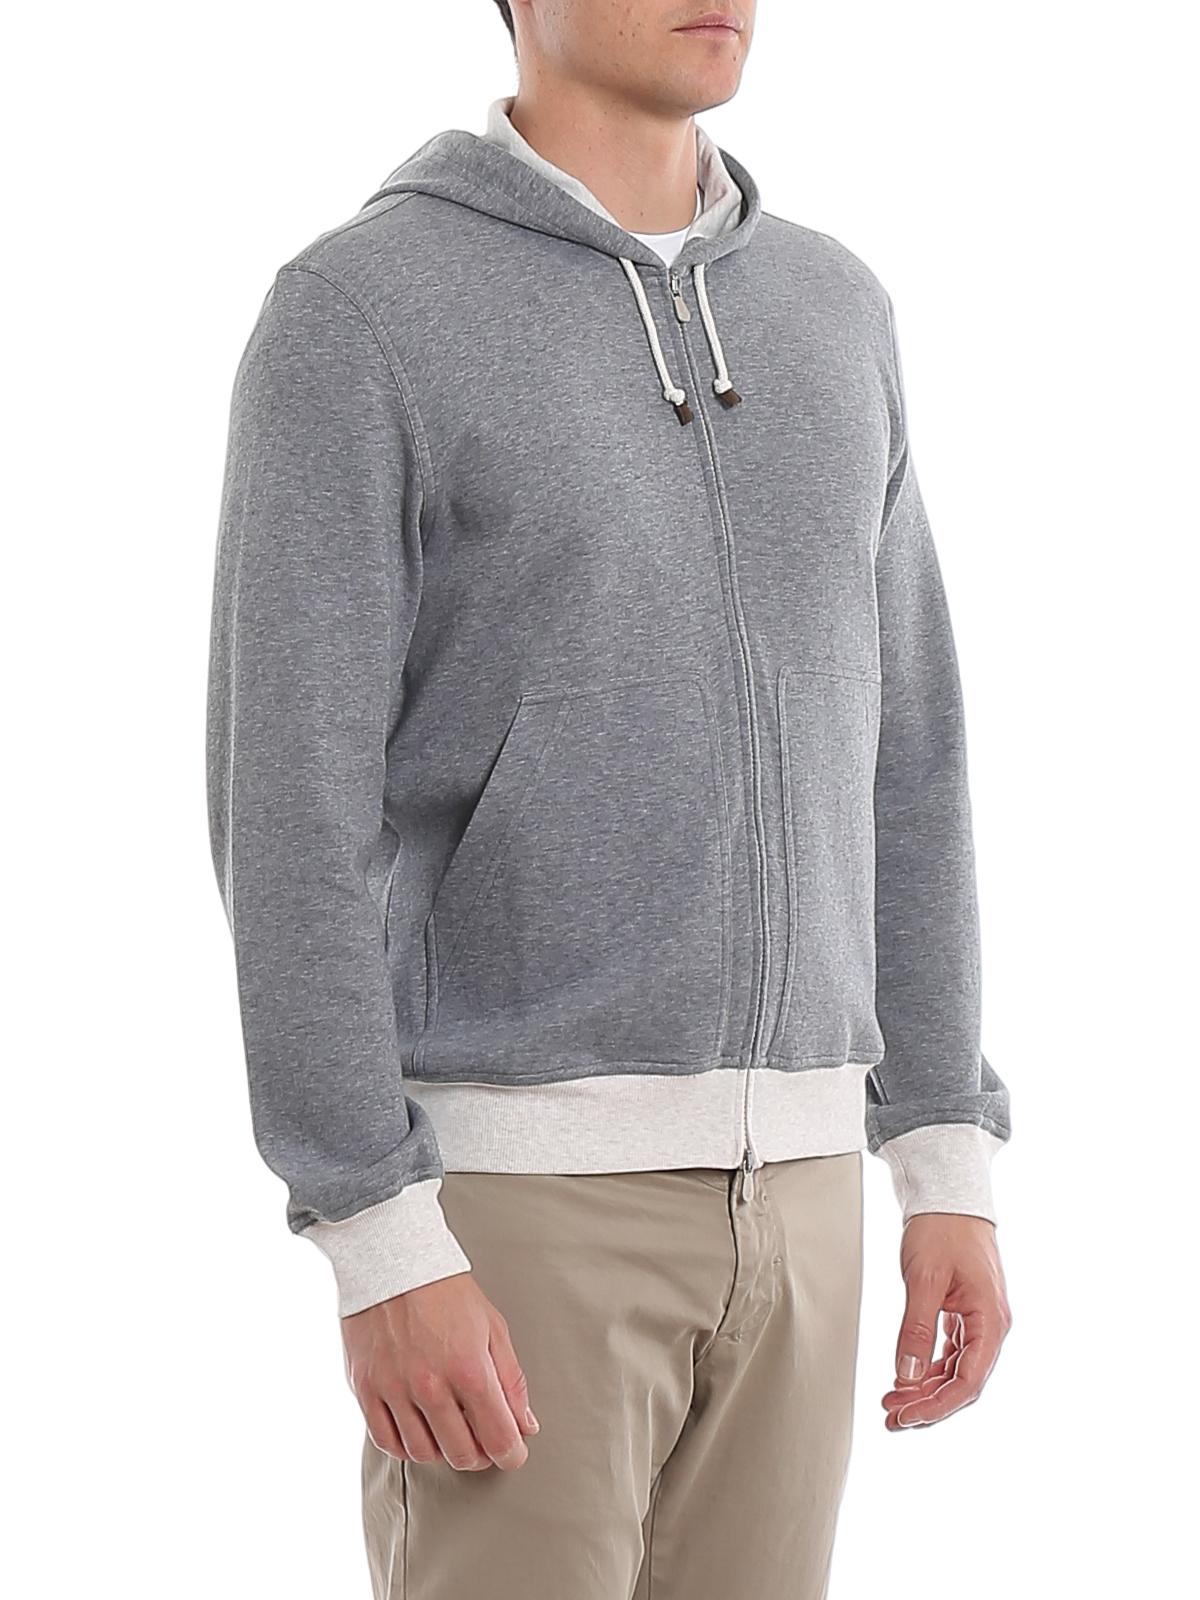 Brunello Cucinelli Cotton Blend Sweatshirt in Grey (Gray) for Men - Lyst